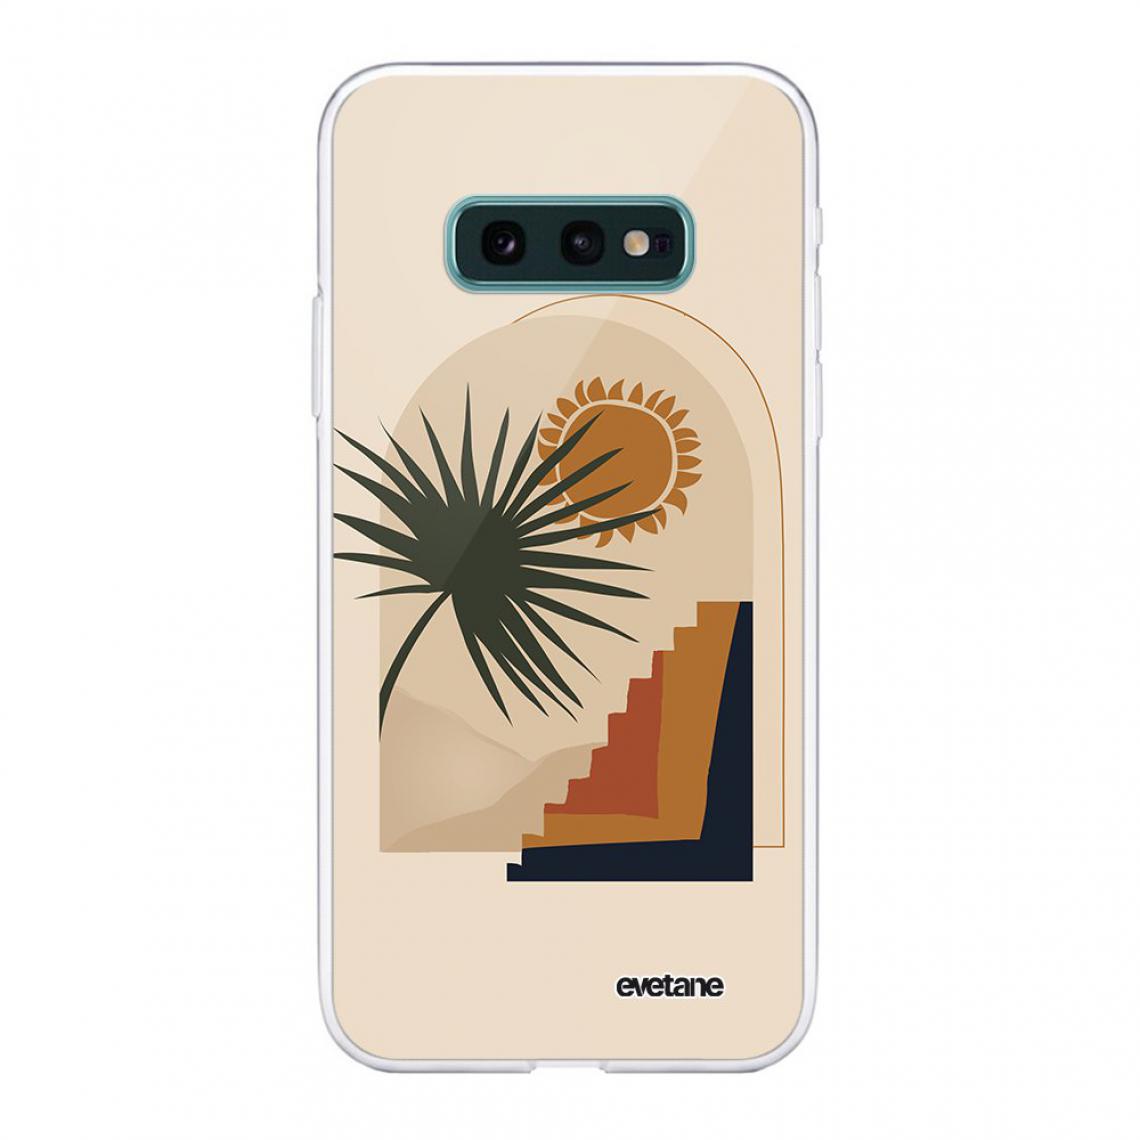 Evetane - Coque Samsung Galaxy S10e souple silicone transparente - Coque, étui smartphone